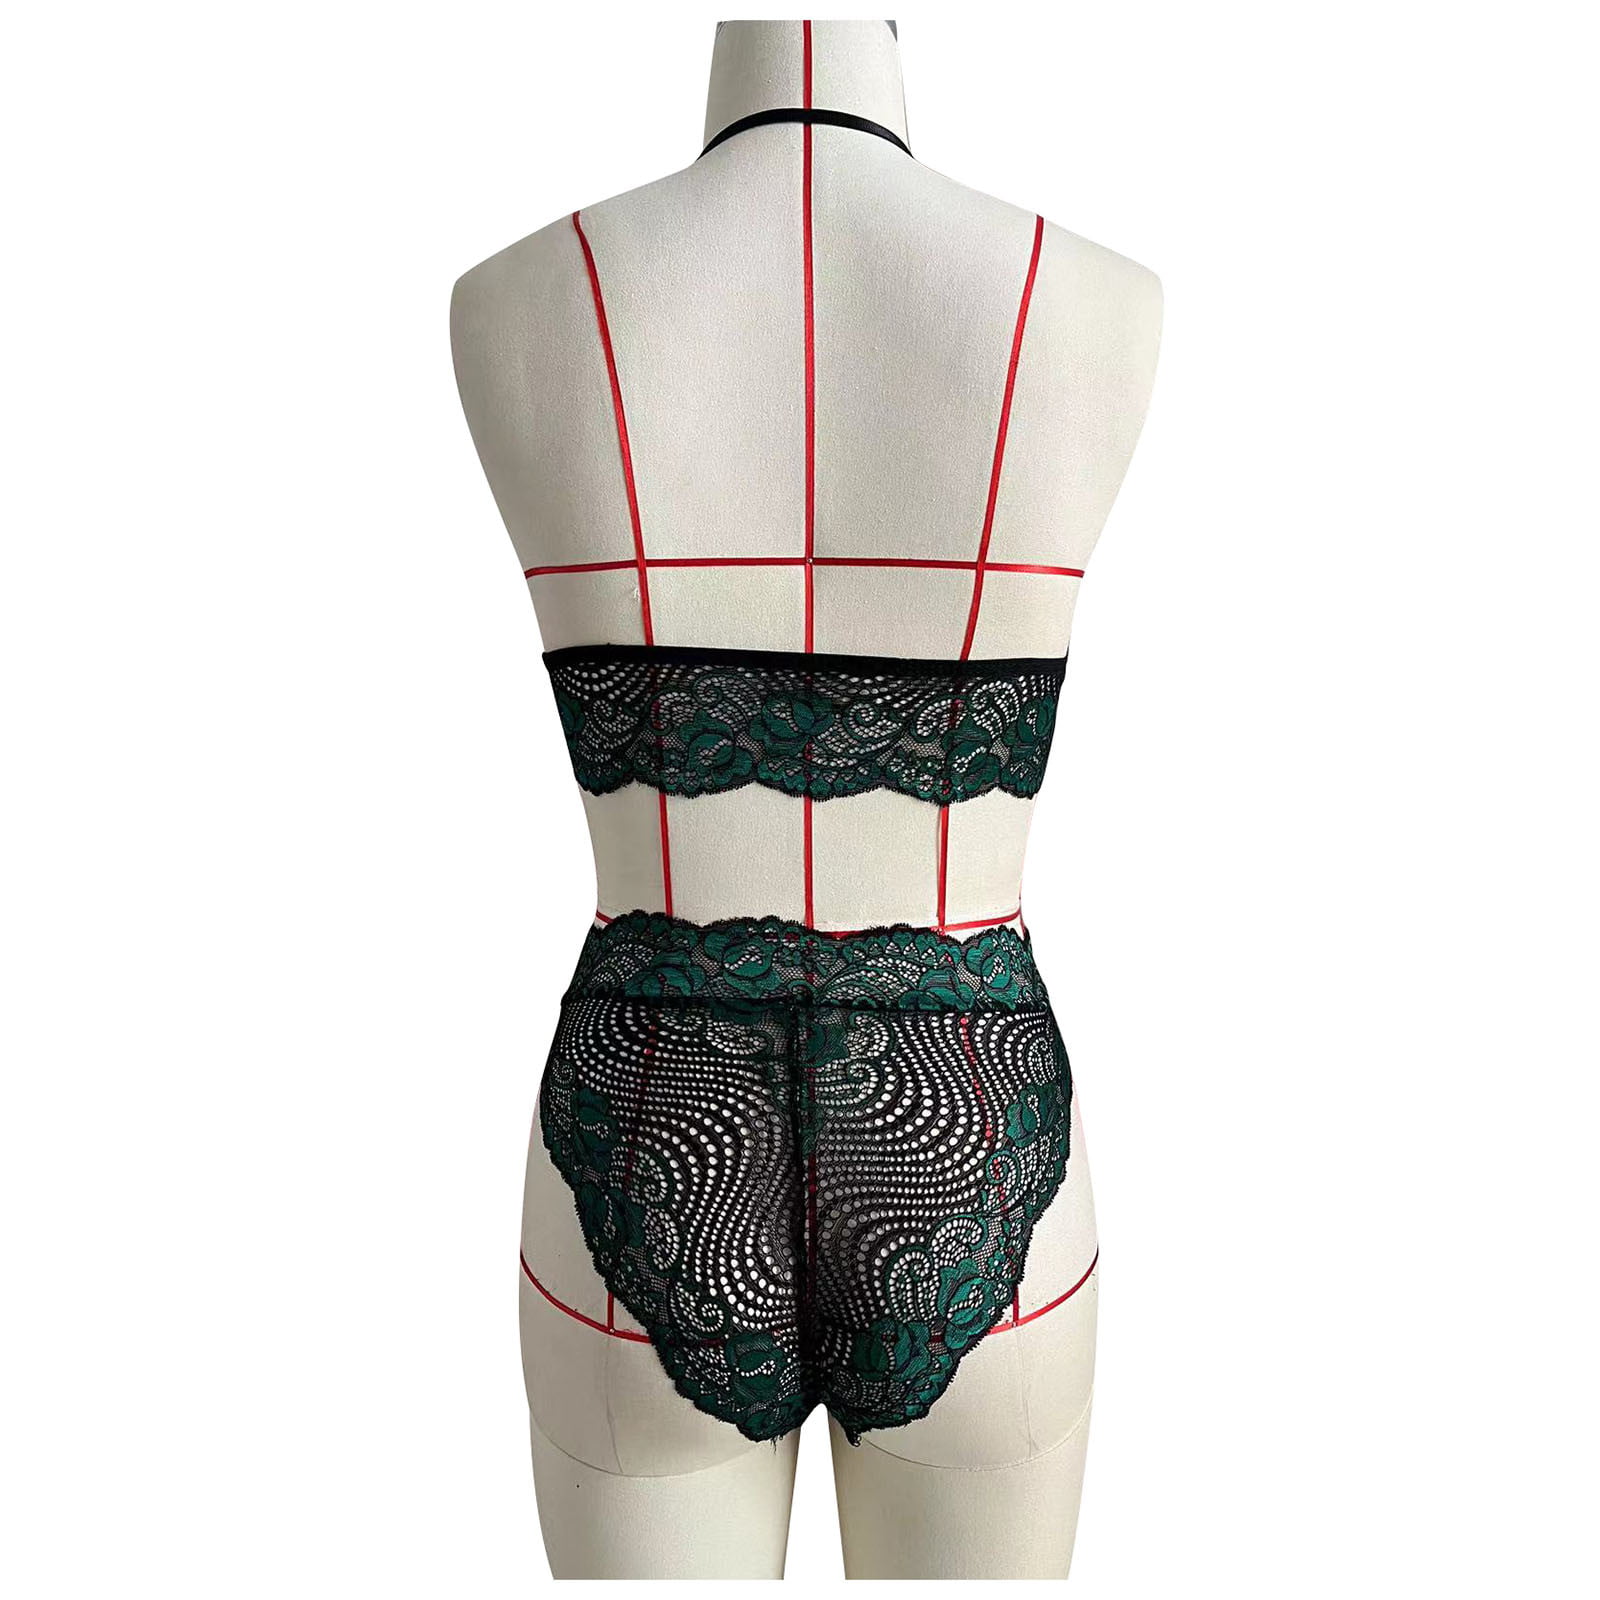 Lopecy-Sta Sexy Women Lingerie Lace Temptation Cute Underwear